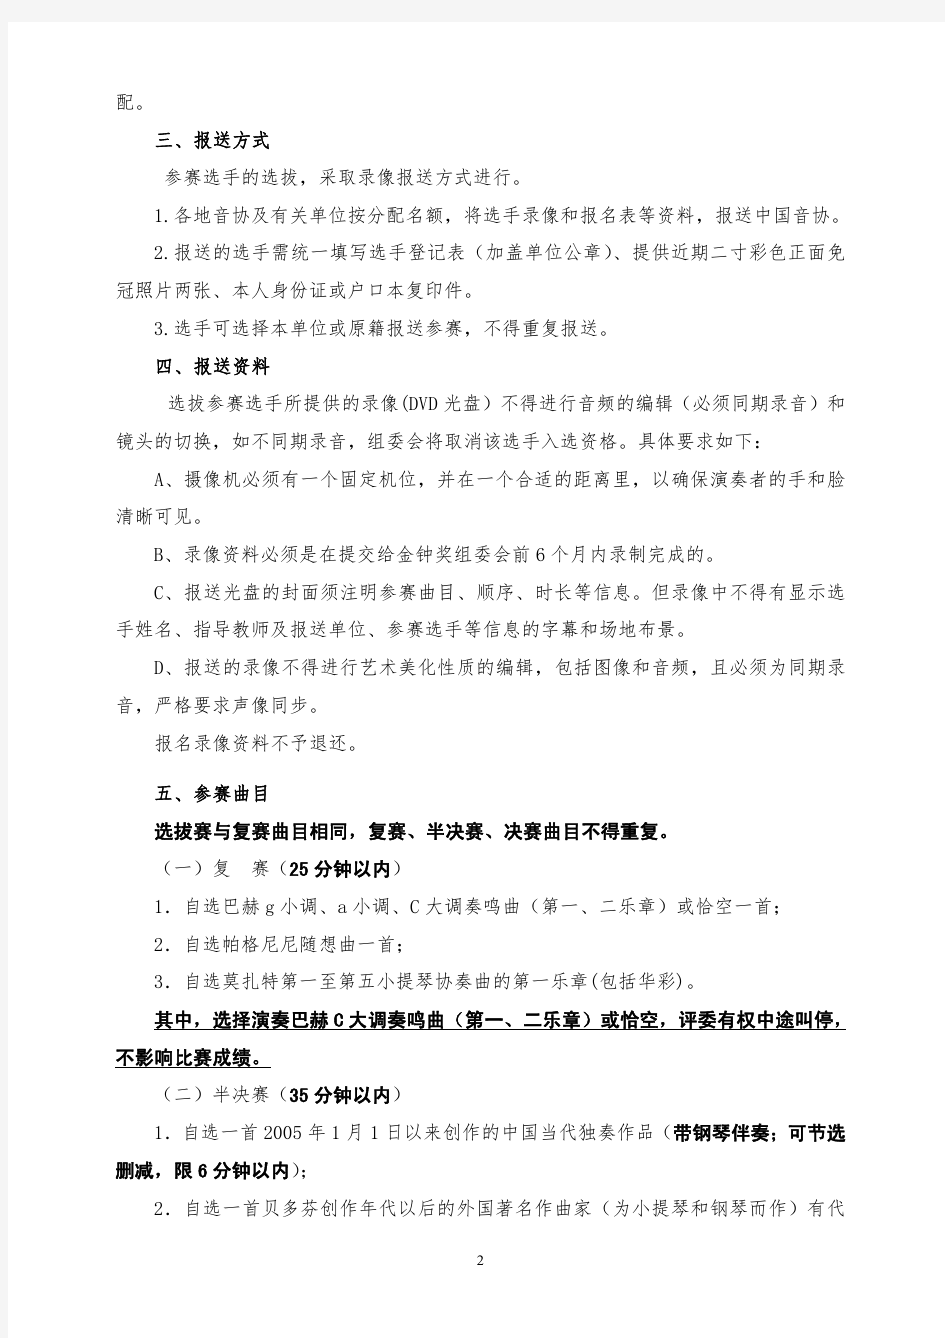 中国音乐金钟奖小提琴比赛赛事安排及评选细则-上海音乐学院